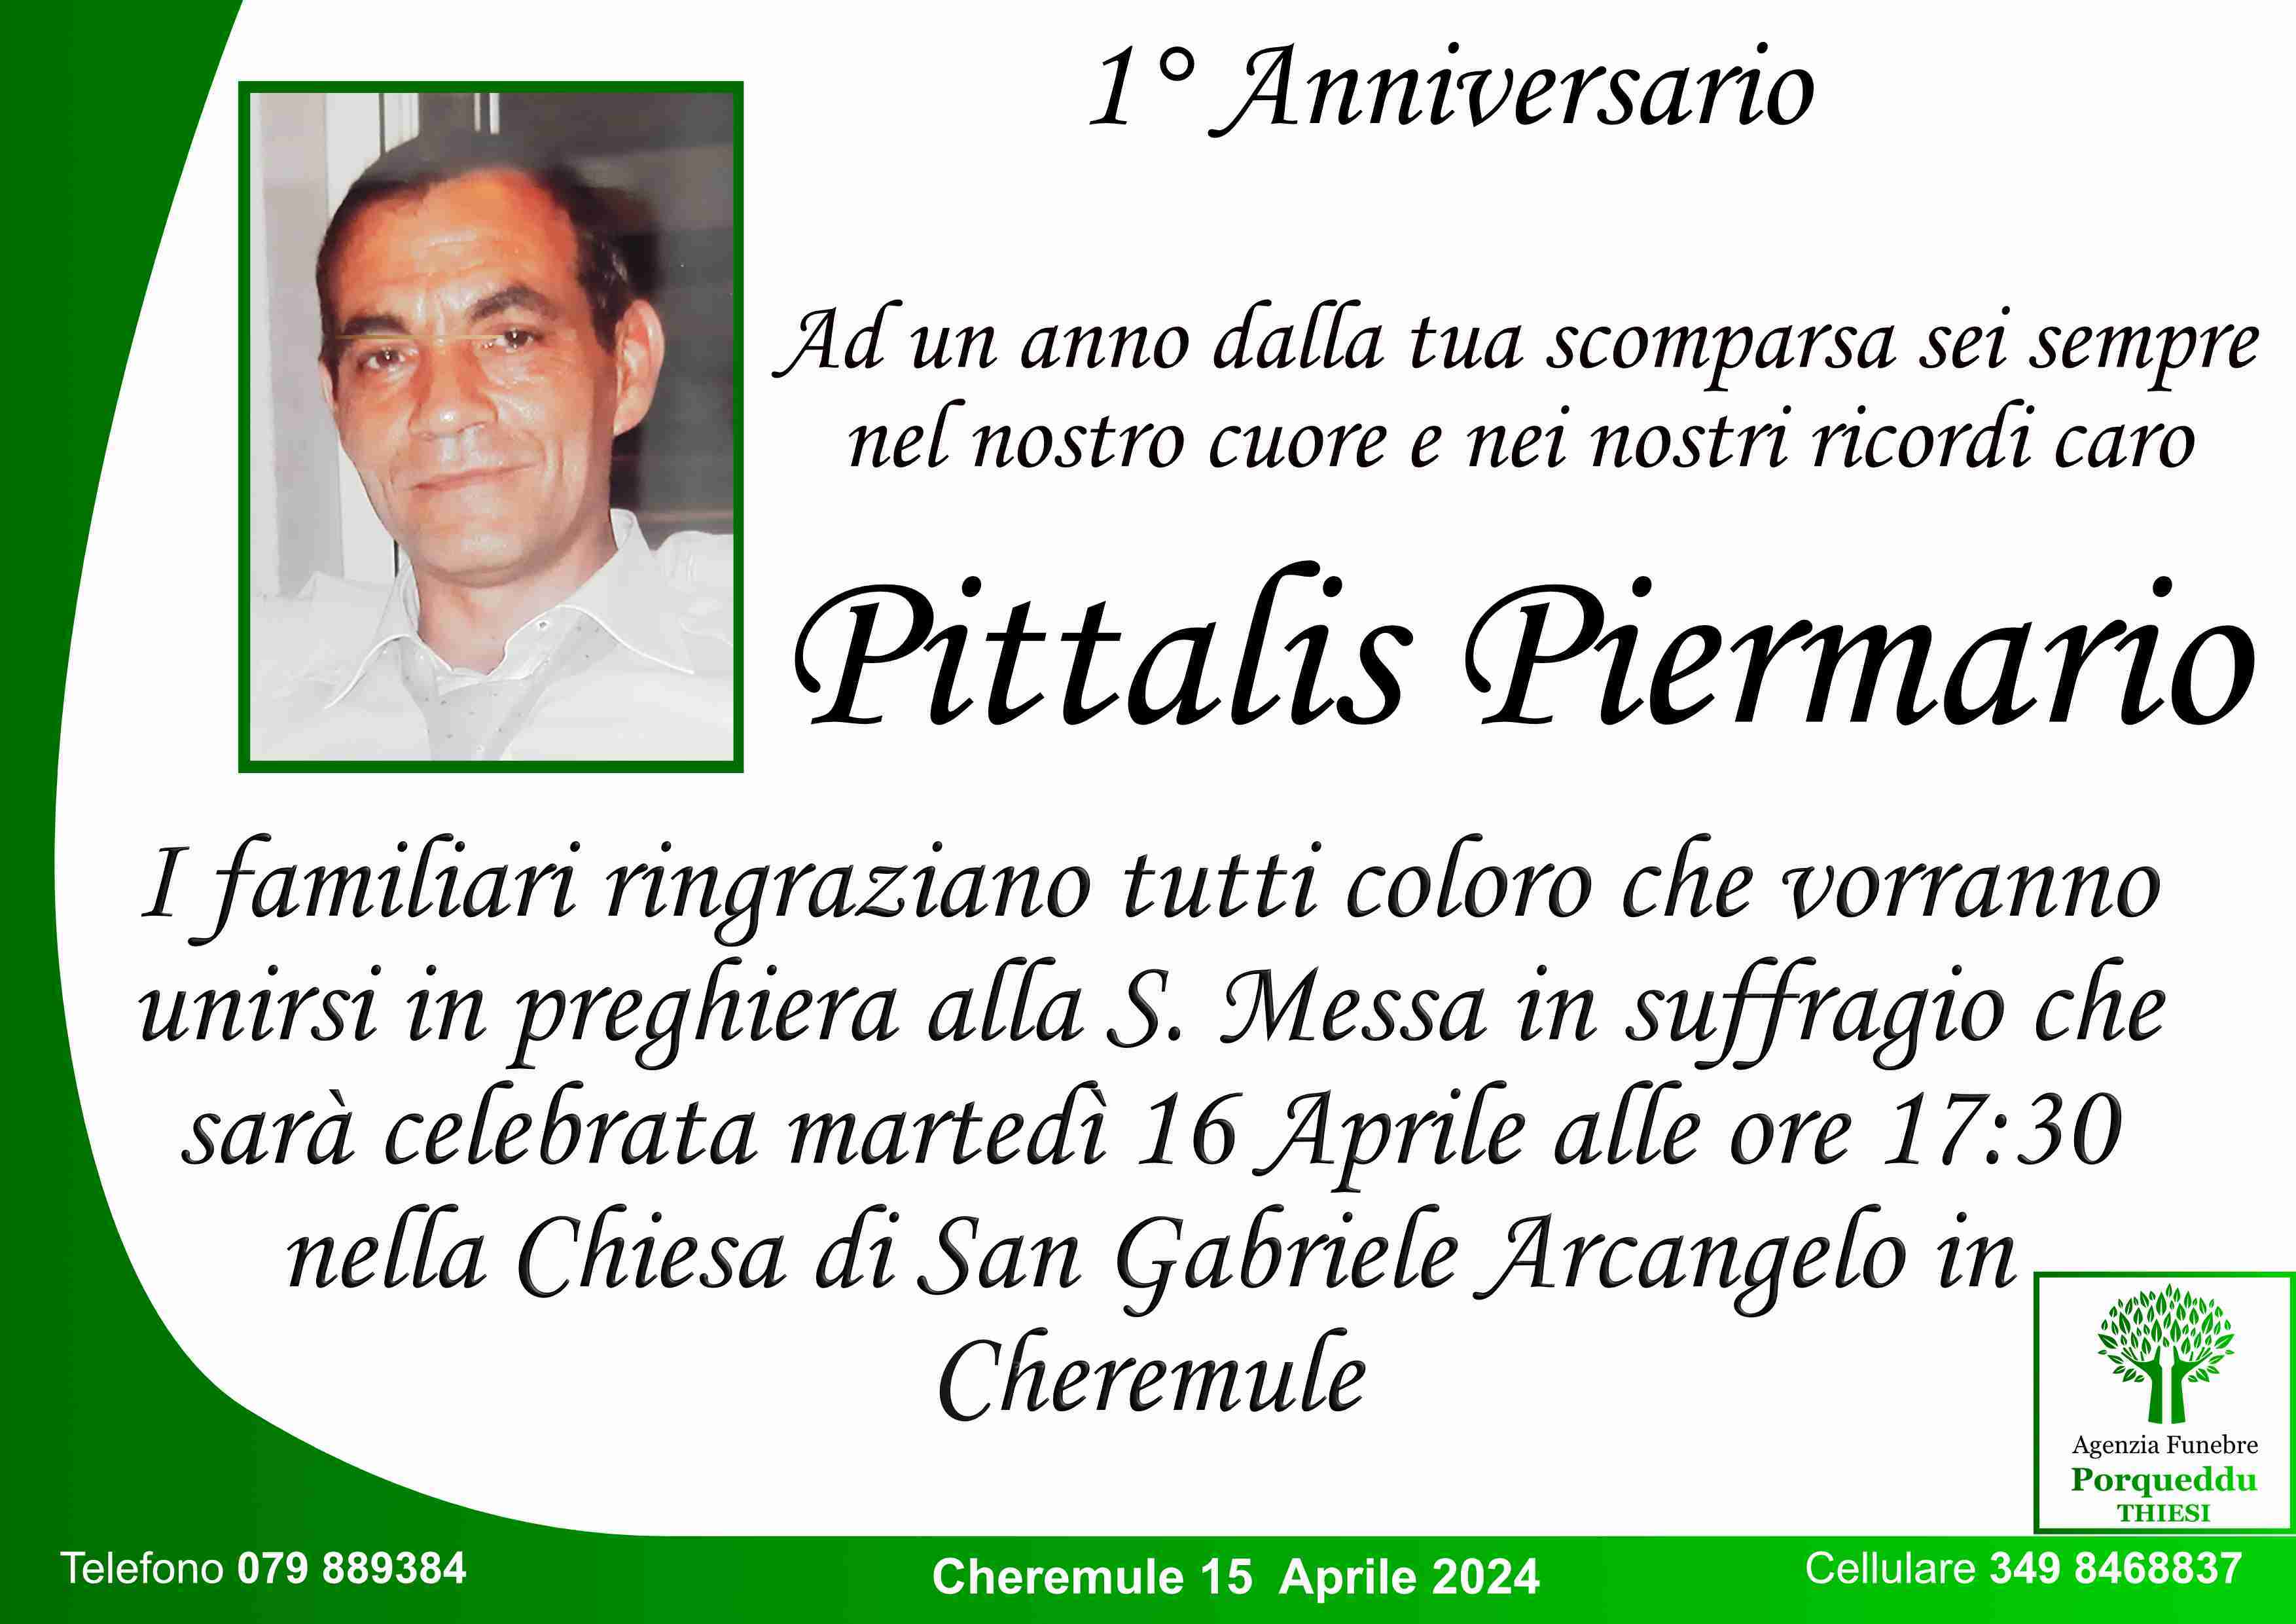 Piermario Pittalis